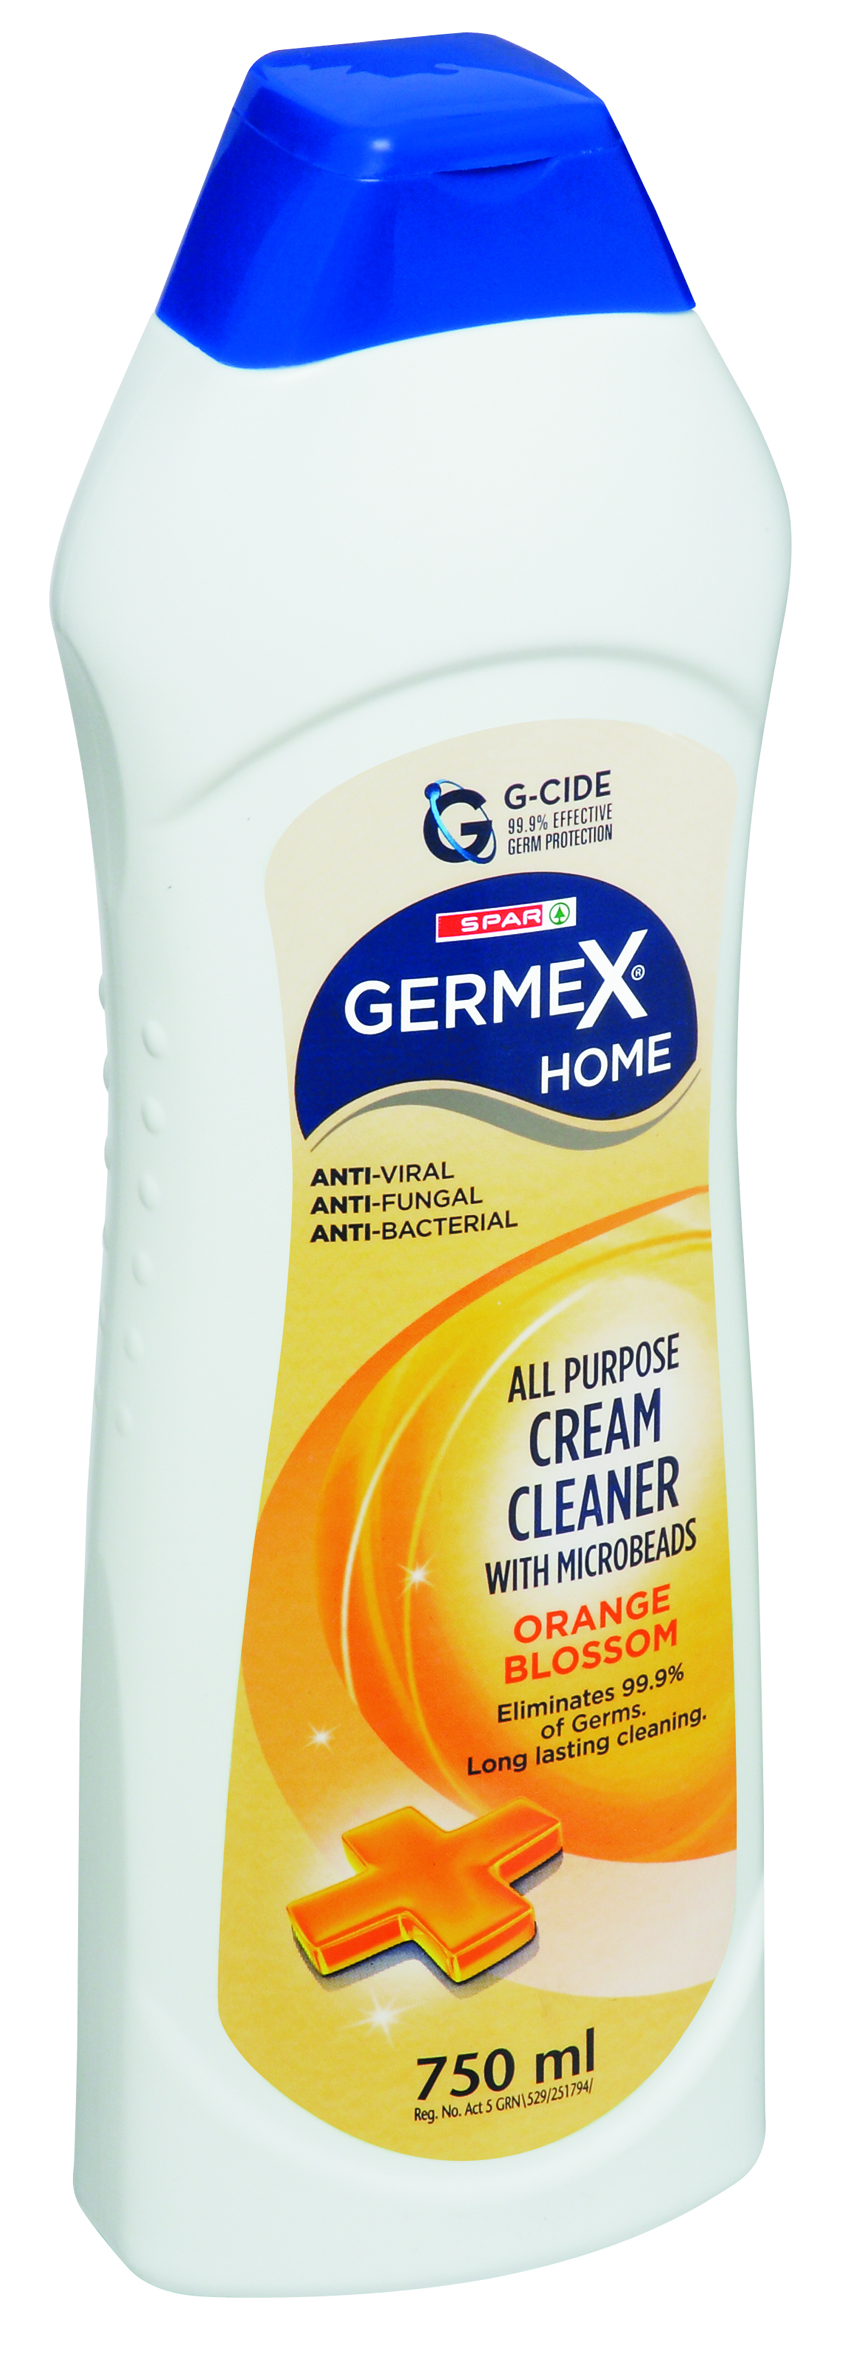 germex apc cream cleaner orange blossom